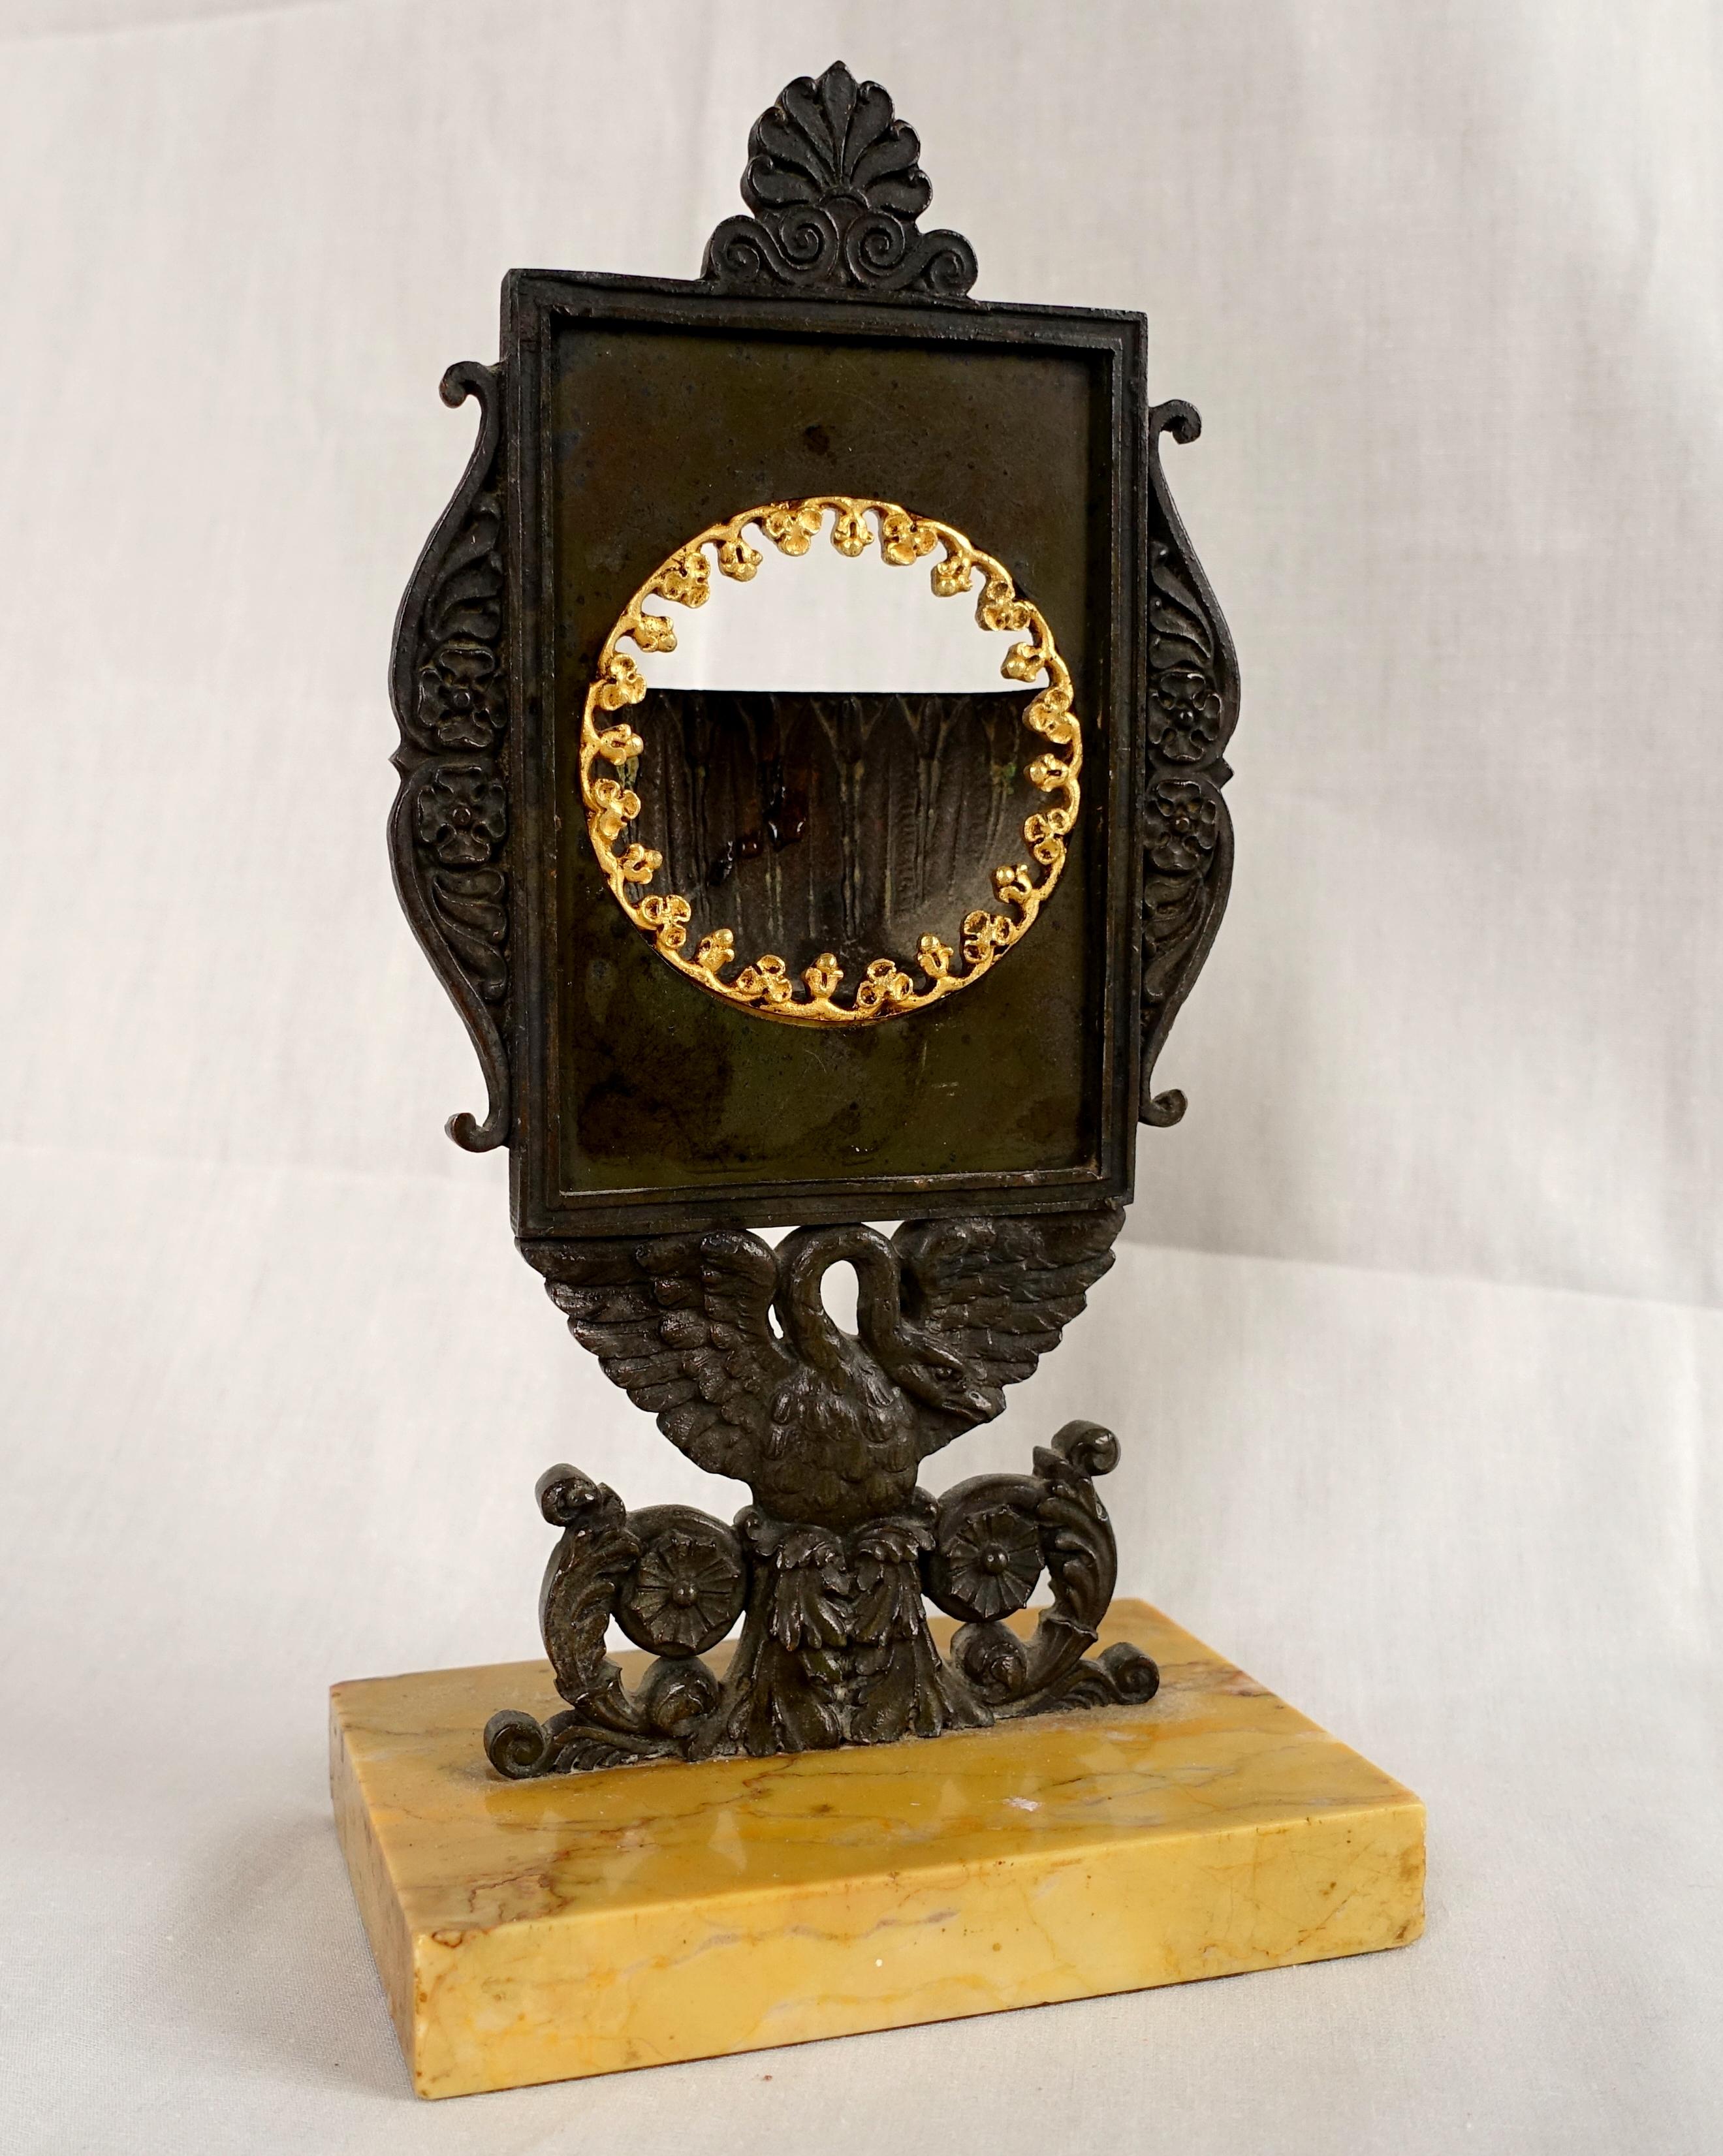 Antiker französischer Empire-Uhrenhalter, frühes 19. Jahrhundert, um 1820.
Der Uhrenhalter ermöglicht die Umwandlung einer Taschenuhr mit offenem Zifferblatt in eine Tisch- oder Schreibtischuhr.
Schönes, seltenes Modell mit einem patinierten